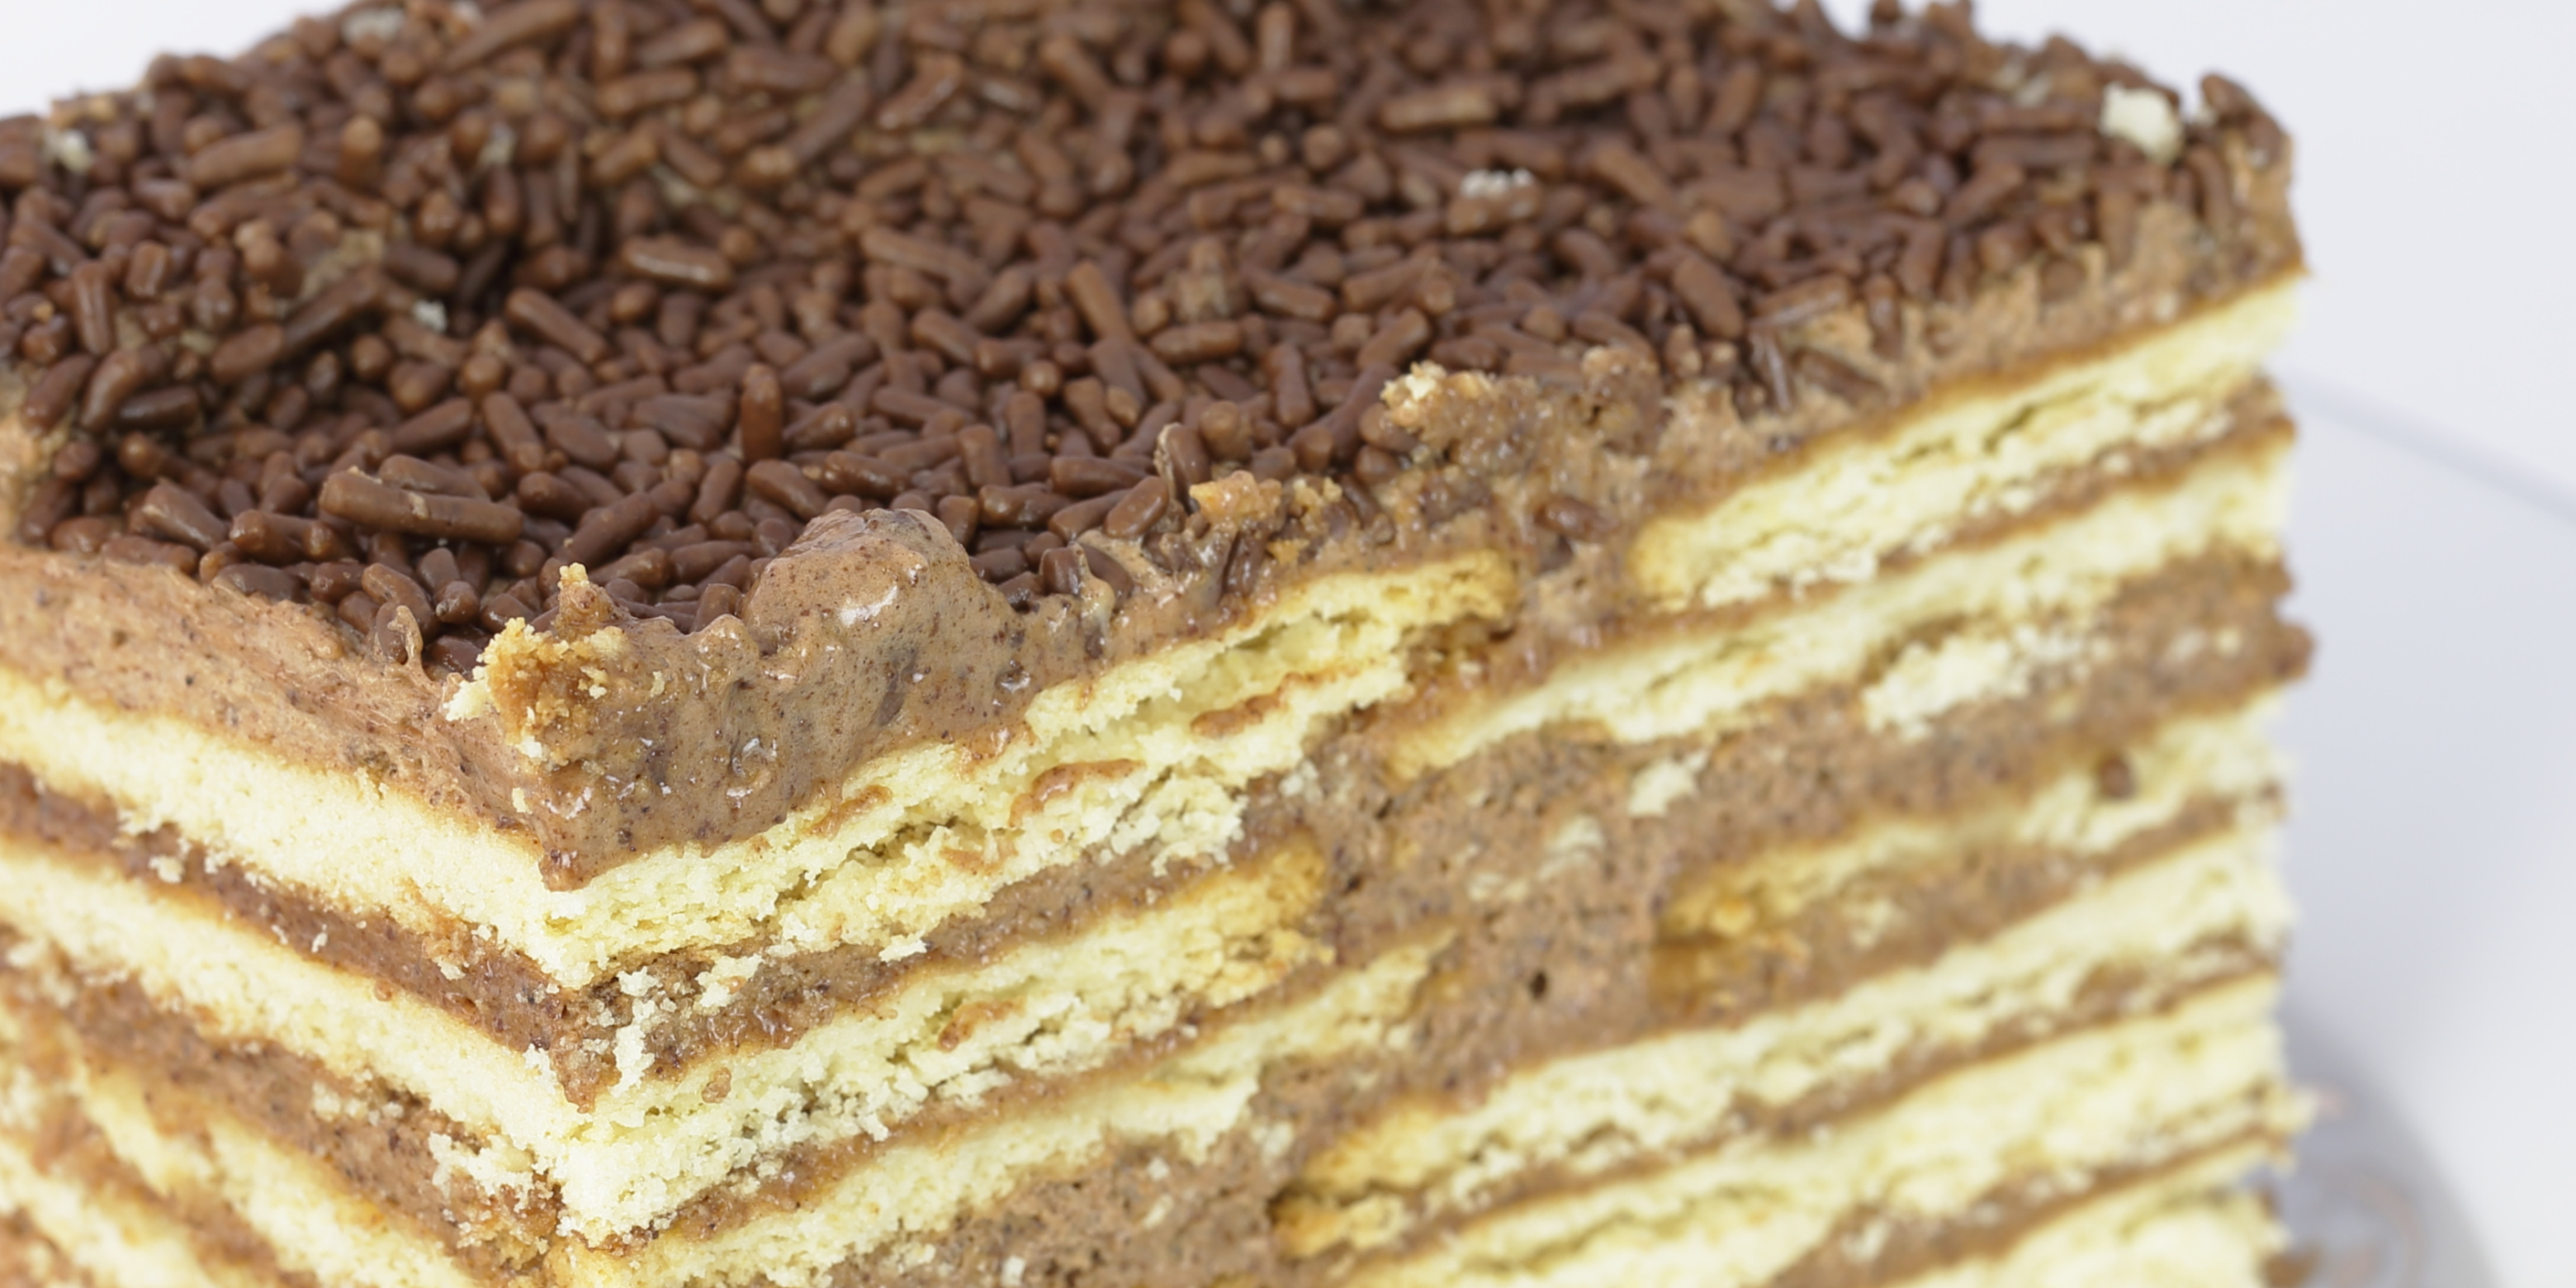 Receta de tarta de galleta con chocolate sin gluten para celiacos